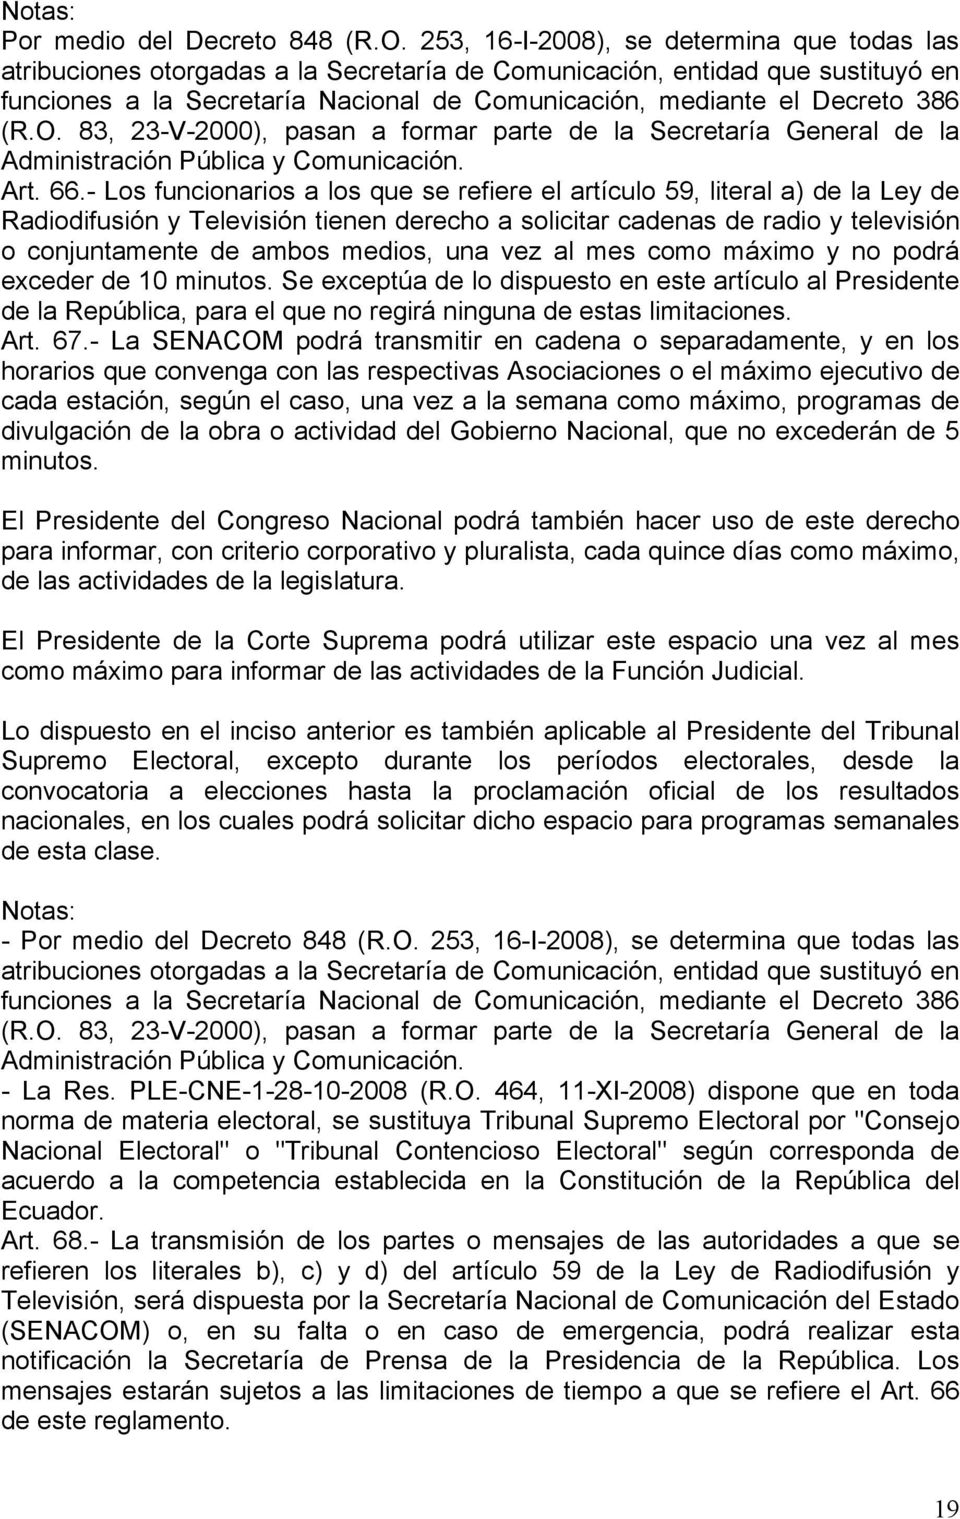 386 (R.O. 83, 23-V-2000), pasan a formar parte de la Secretaría General de la Administración Pública y Comunicación. Art. 66.